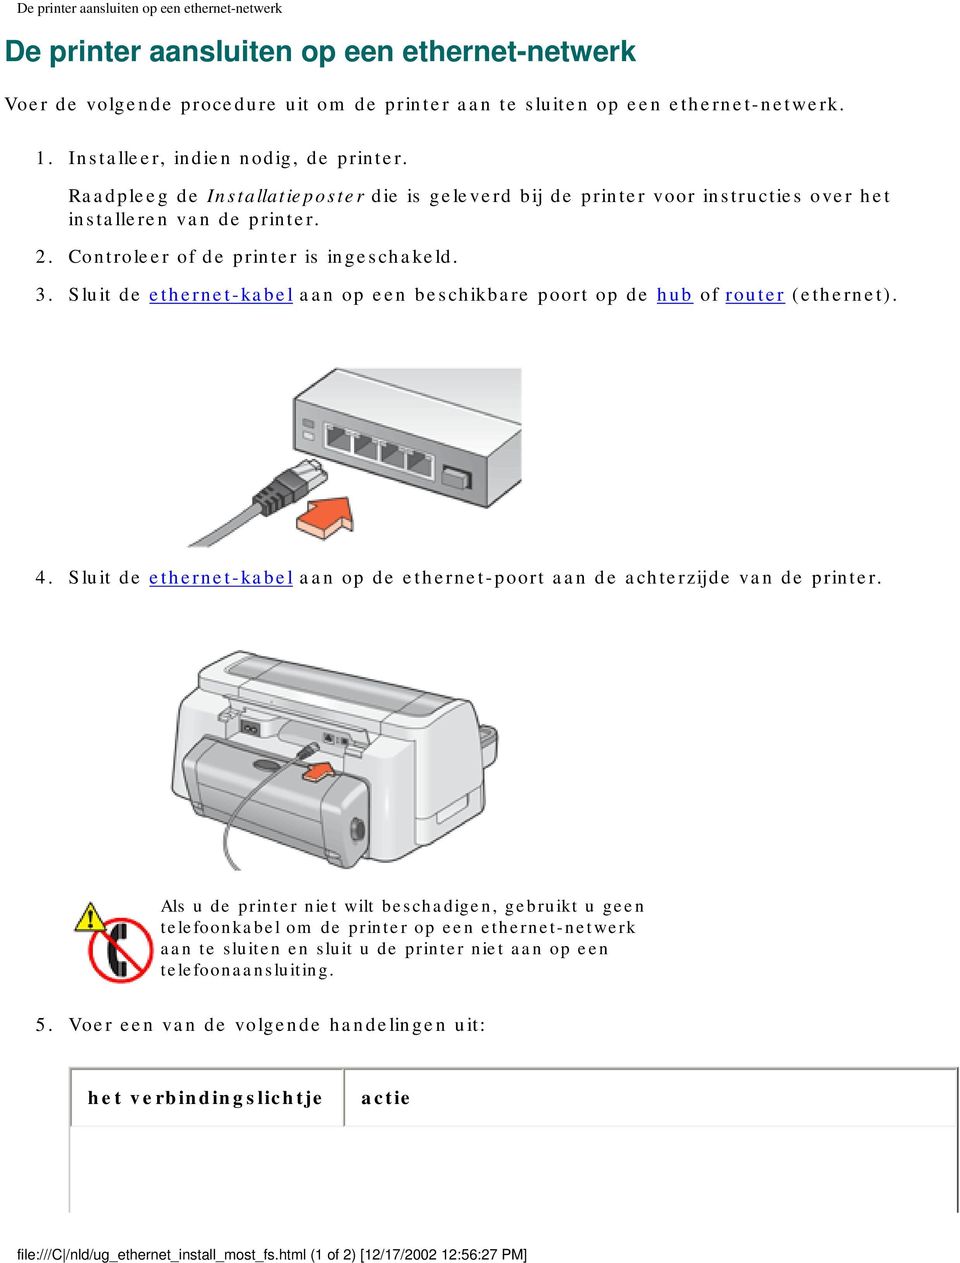 3. Sluit de ethernet-kabel aan op een beschikbare poort op de hub of router (ethernet). 4. Sluit de ethernet-kabel aan op de ethernet-poort aan de achterzijde van de printer.